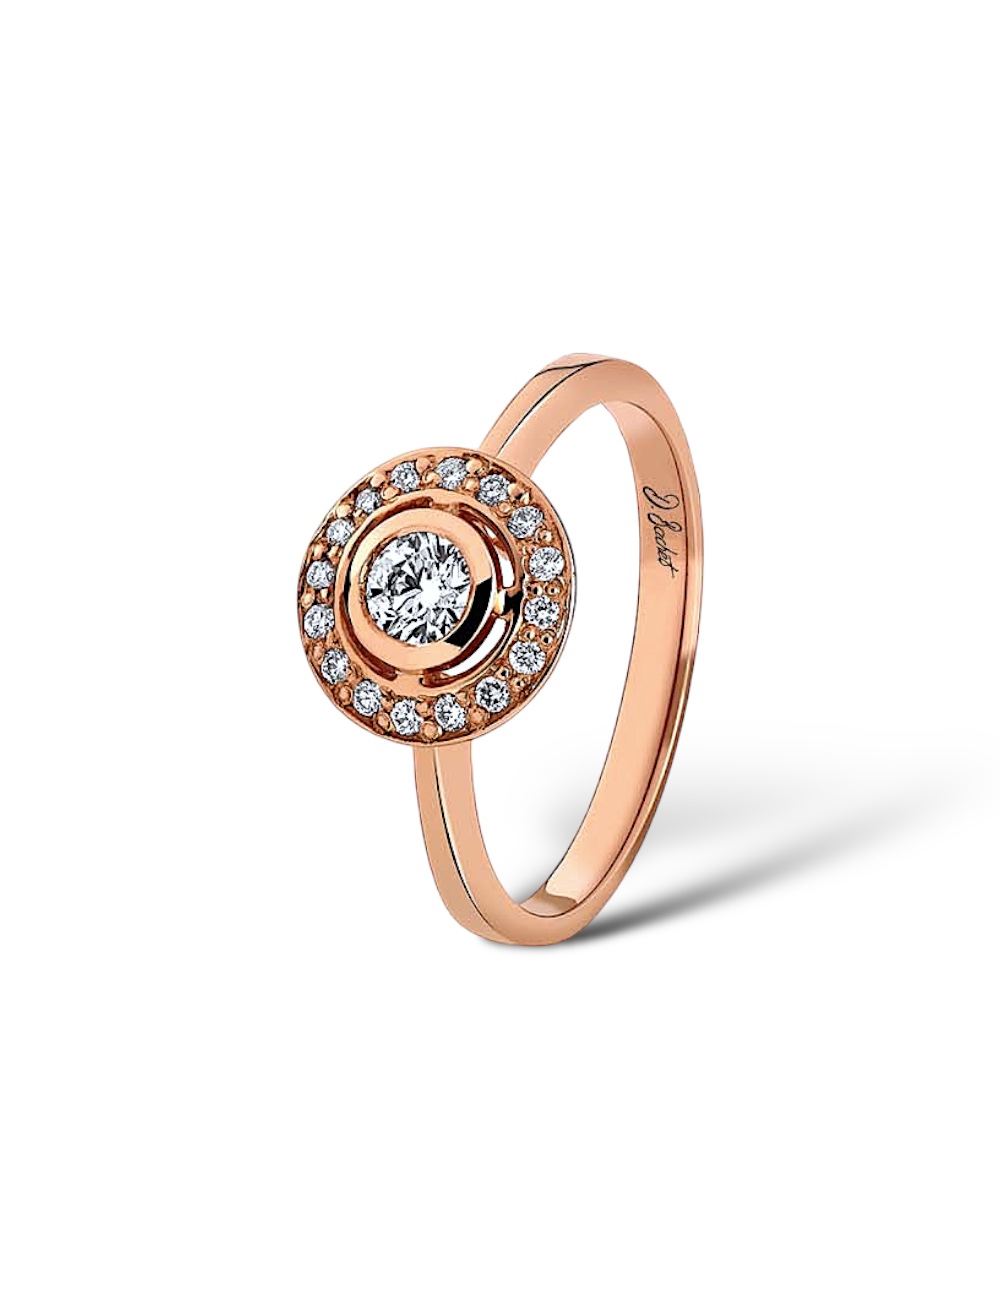 Bague entourage en or rose avec diamant blanc central de 0,30 ct, symbole d'amour éternel, quintessence de l'élégance.